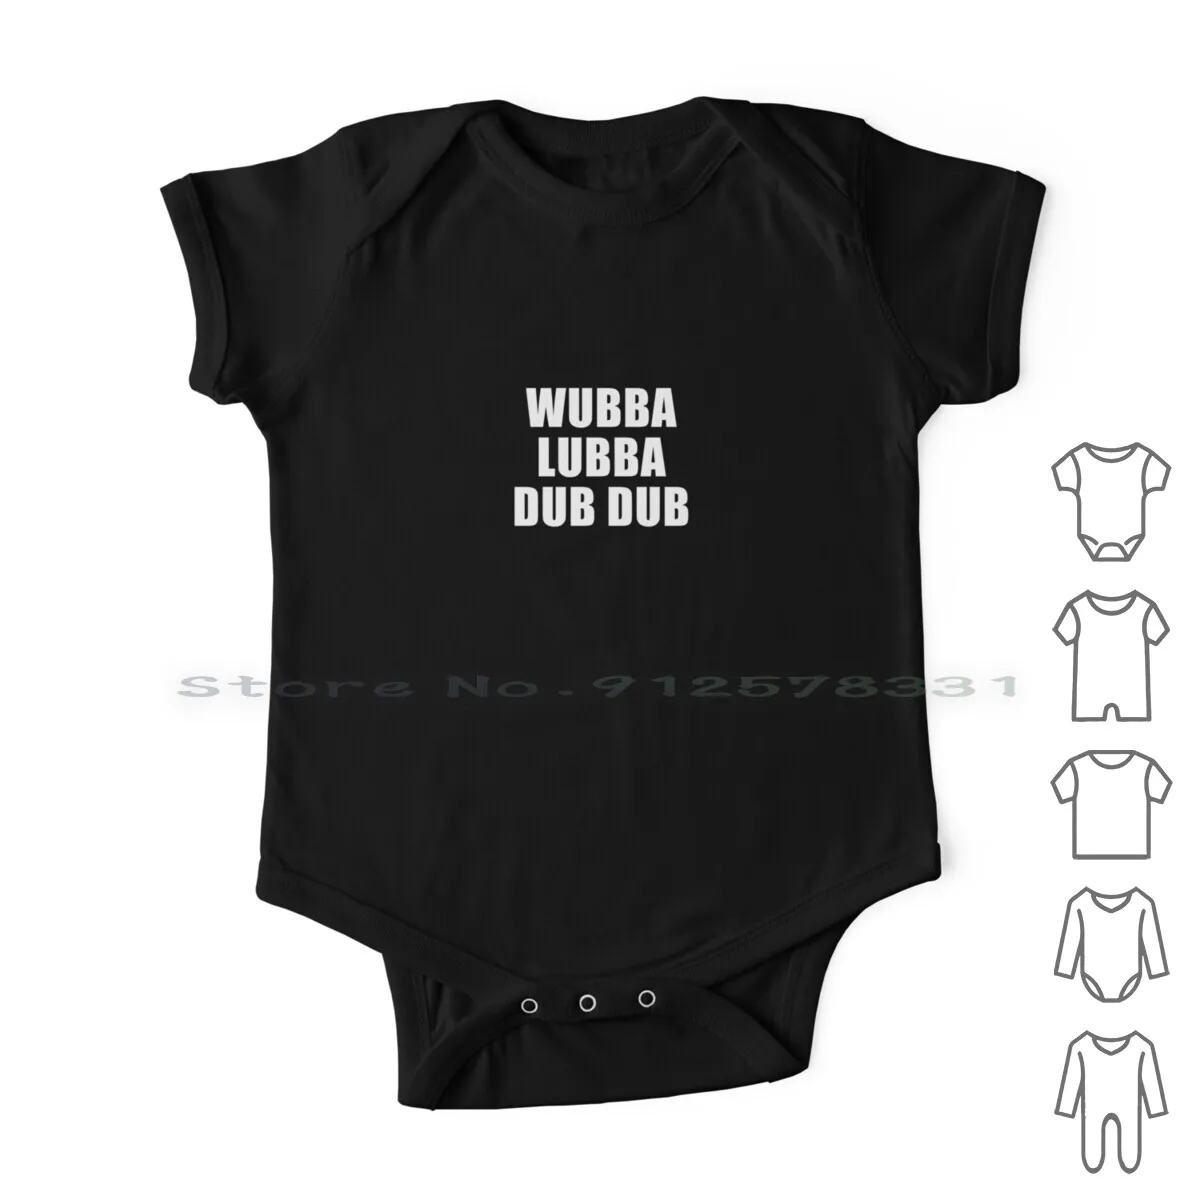 

Wubba Lubba Dub (черный) Одежда для новорожденных, комбинезоны, хлопковые комбинезоны, Wubba Lubba Dub, Рик Санчеса, Морти, Смит, для взрослых